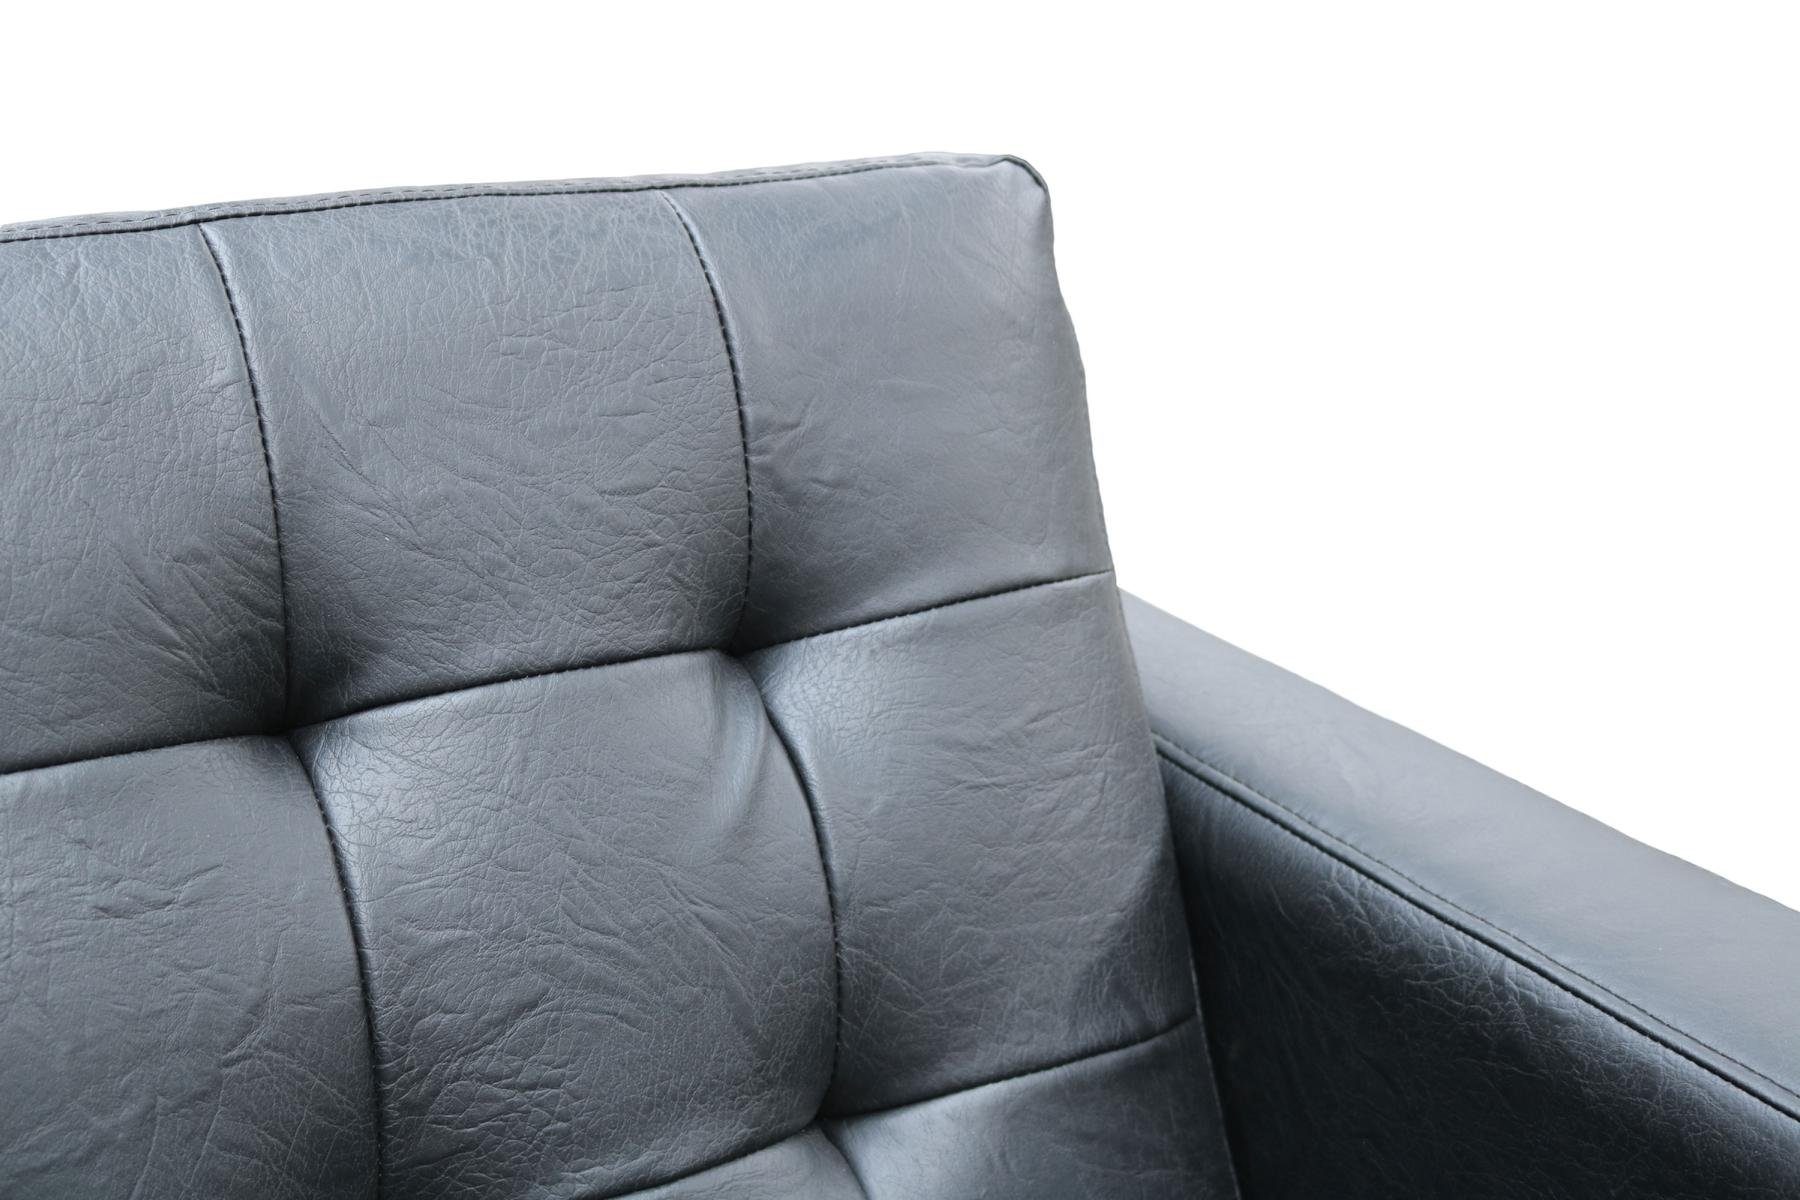 JVmoebel Sofa Schwarze Chesterfield Couch in 3+1 Polstermöbel Europe Neu, Made Polster Sitzer